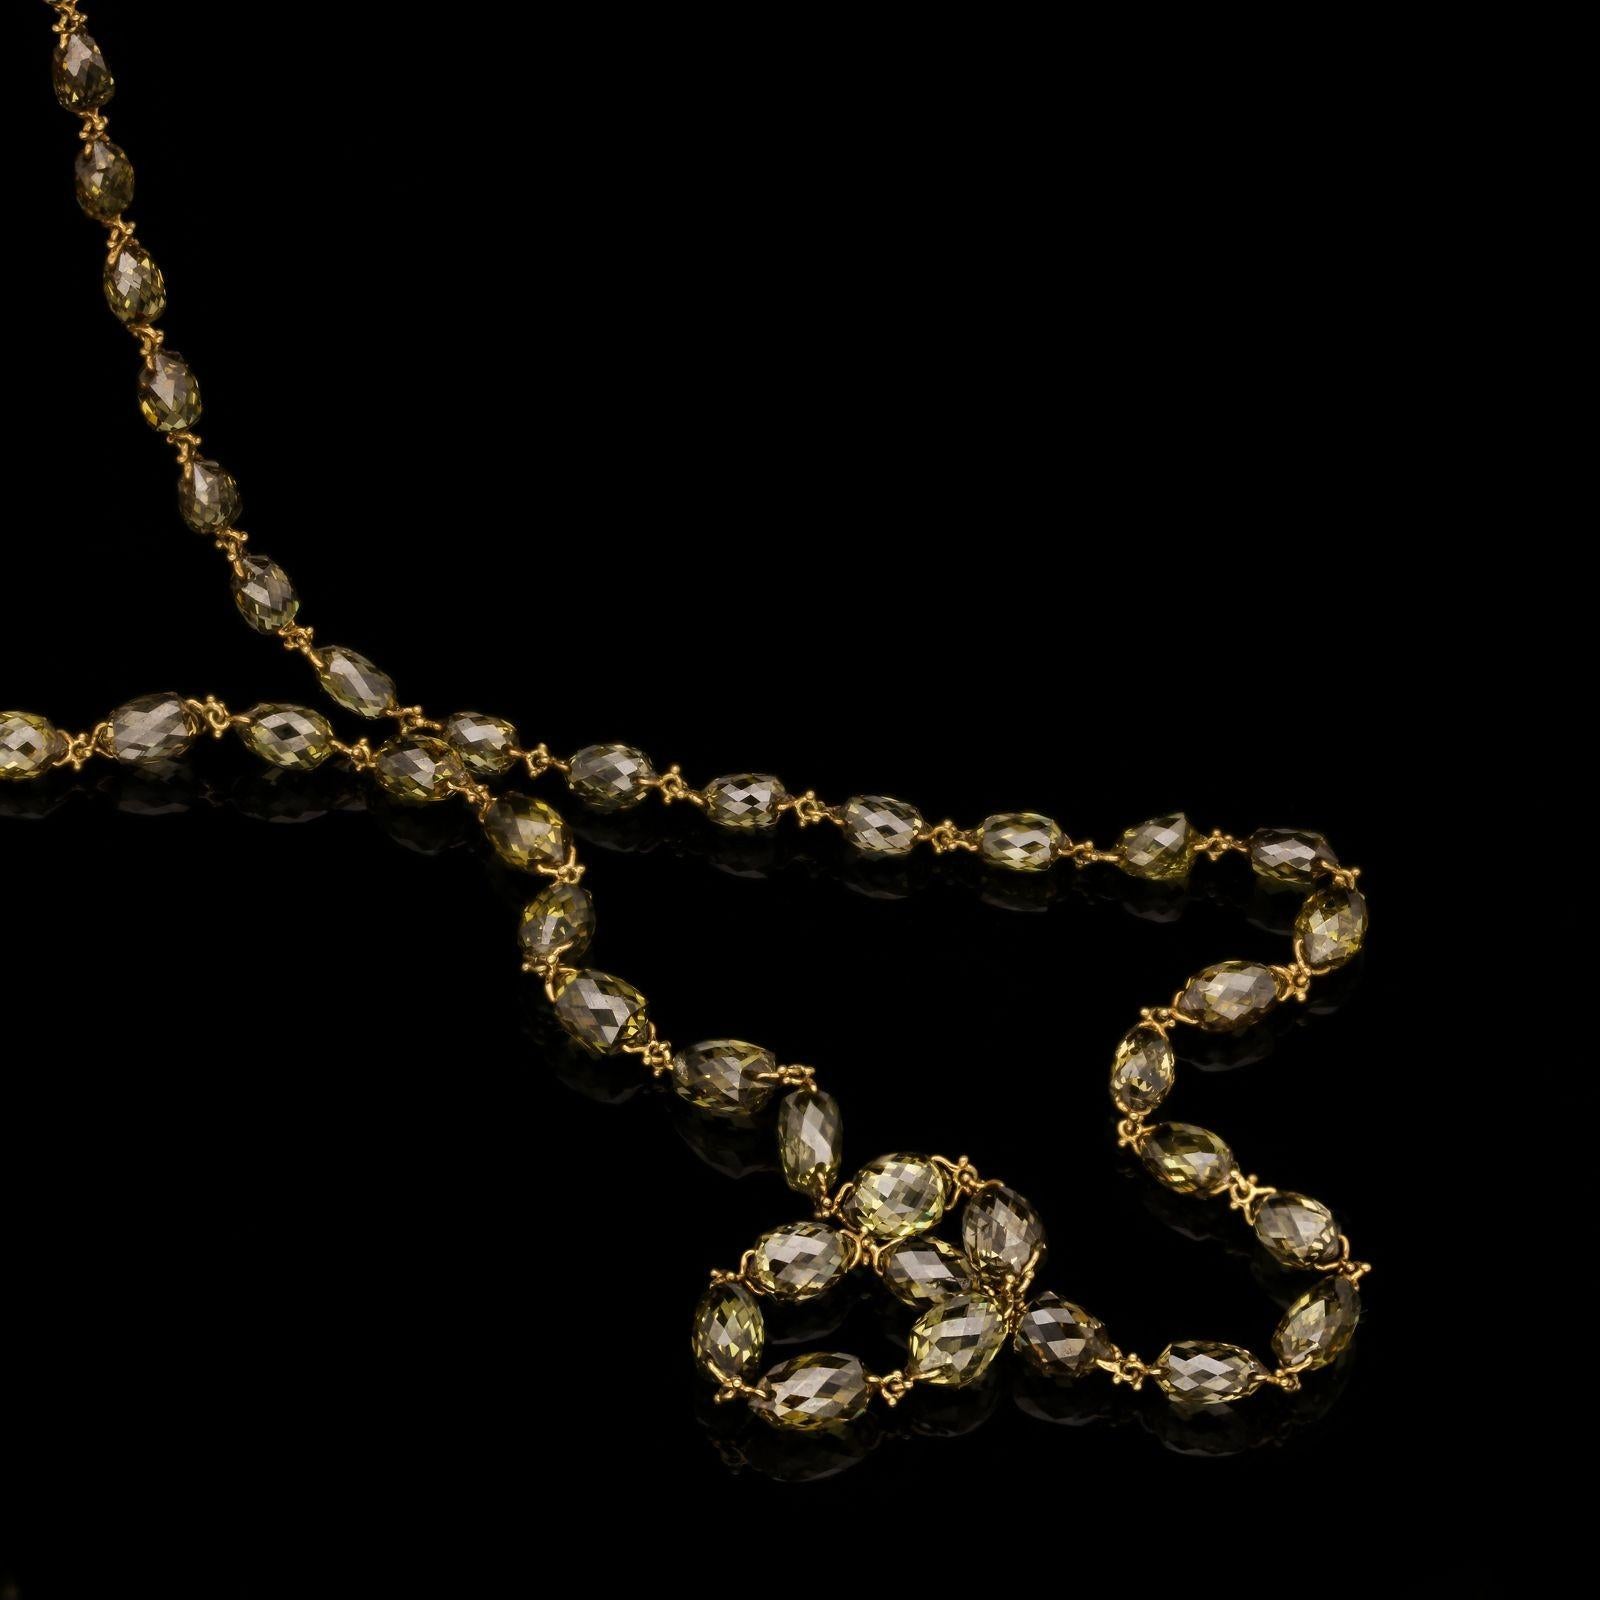 Magnifique collier en or et diamants briolettes de Hancocks, la chaîne de 16″ est formée de soixante-huit diamants briolettes ovales de taille ancienne pesant au total 16,17cts et présentant une belle gamme subtile de couleurs allant du jaune doré